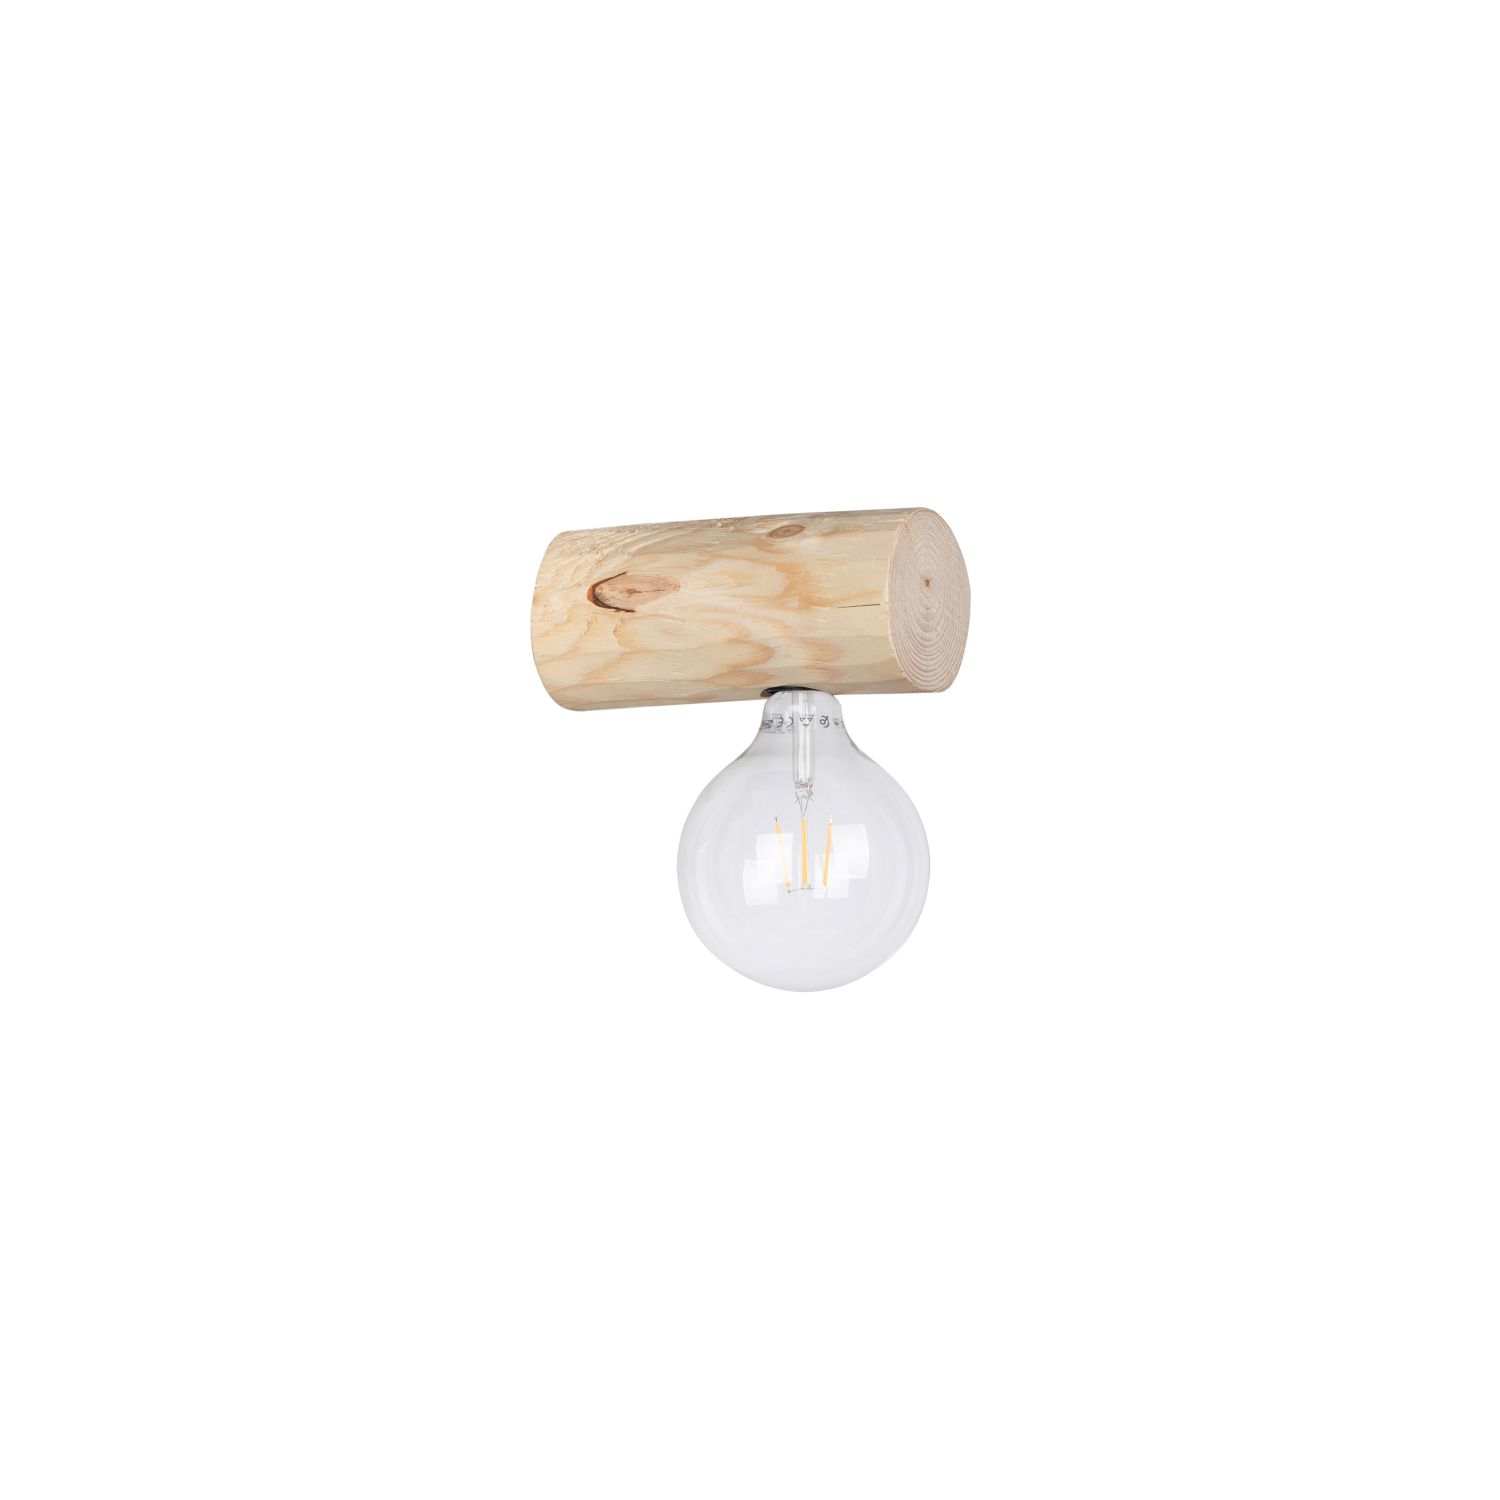 Moderne Wandlampe Holz Ast naturnah E27 gemütlich